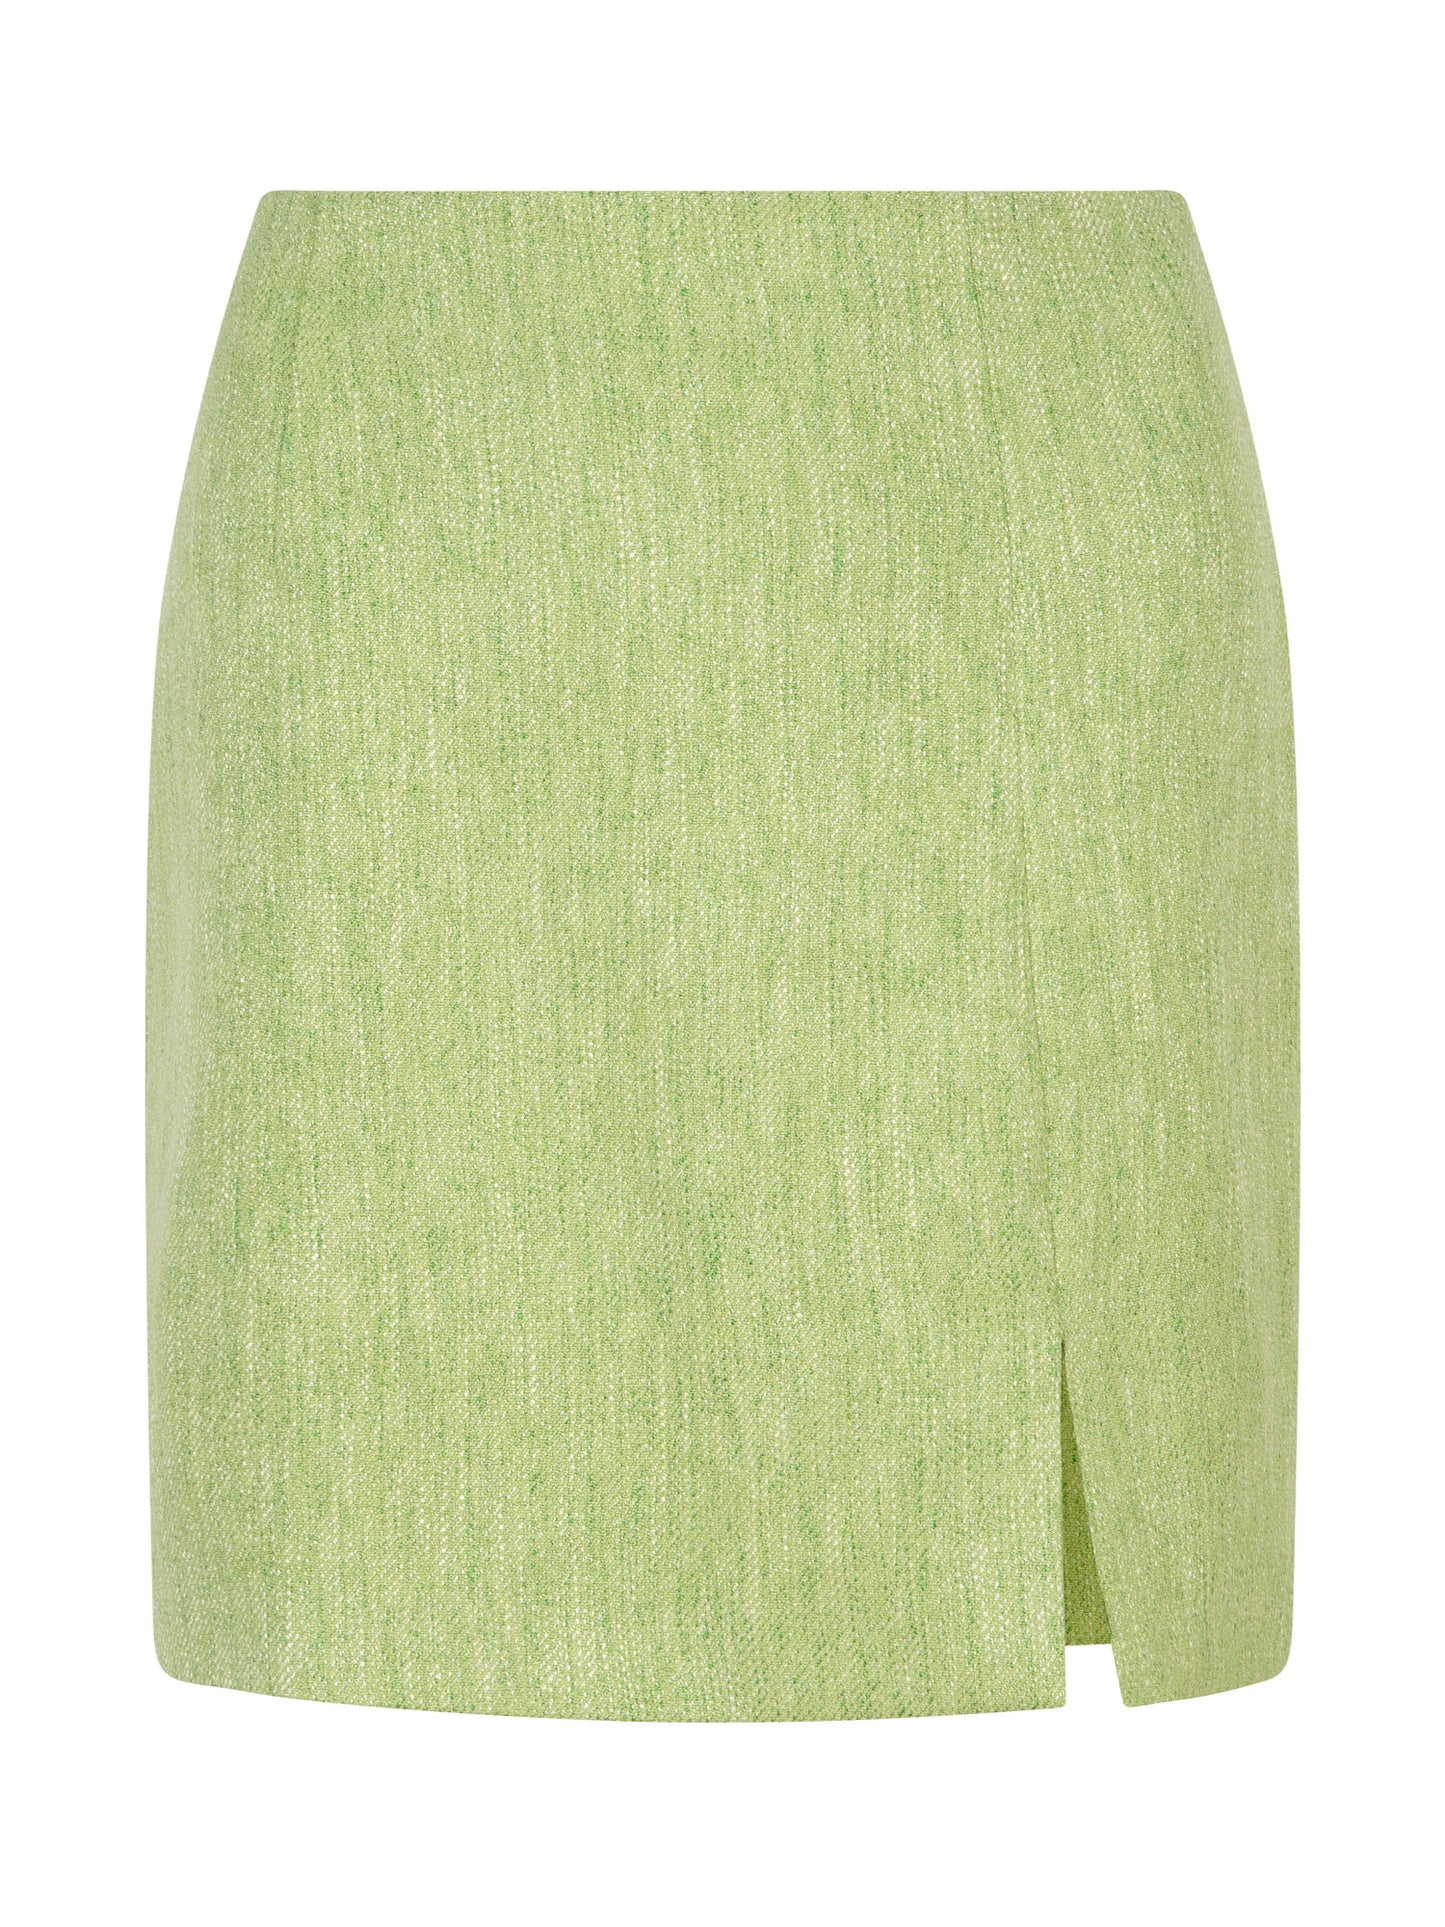 Skirt Estelle soft green